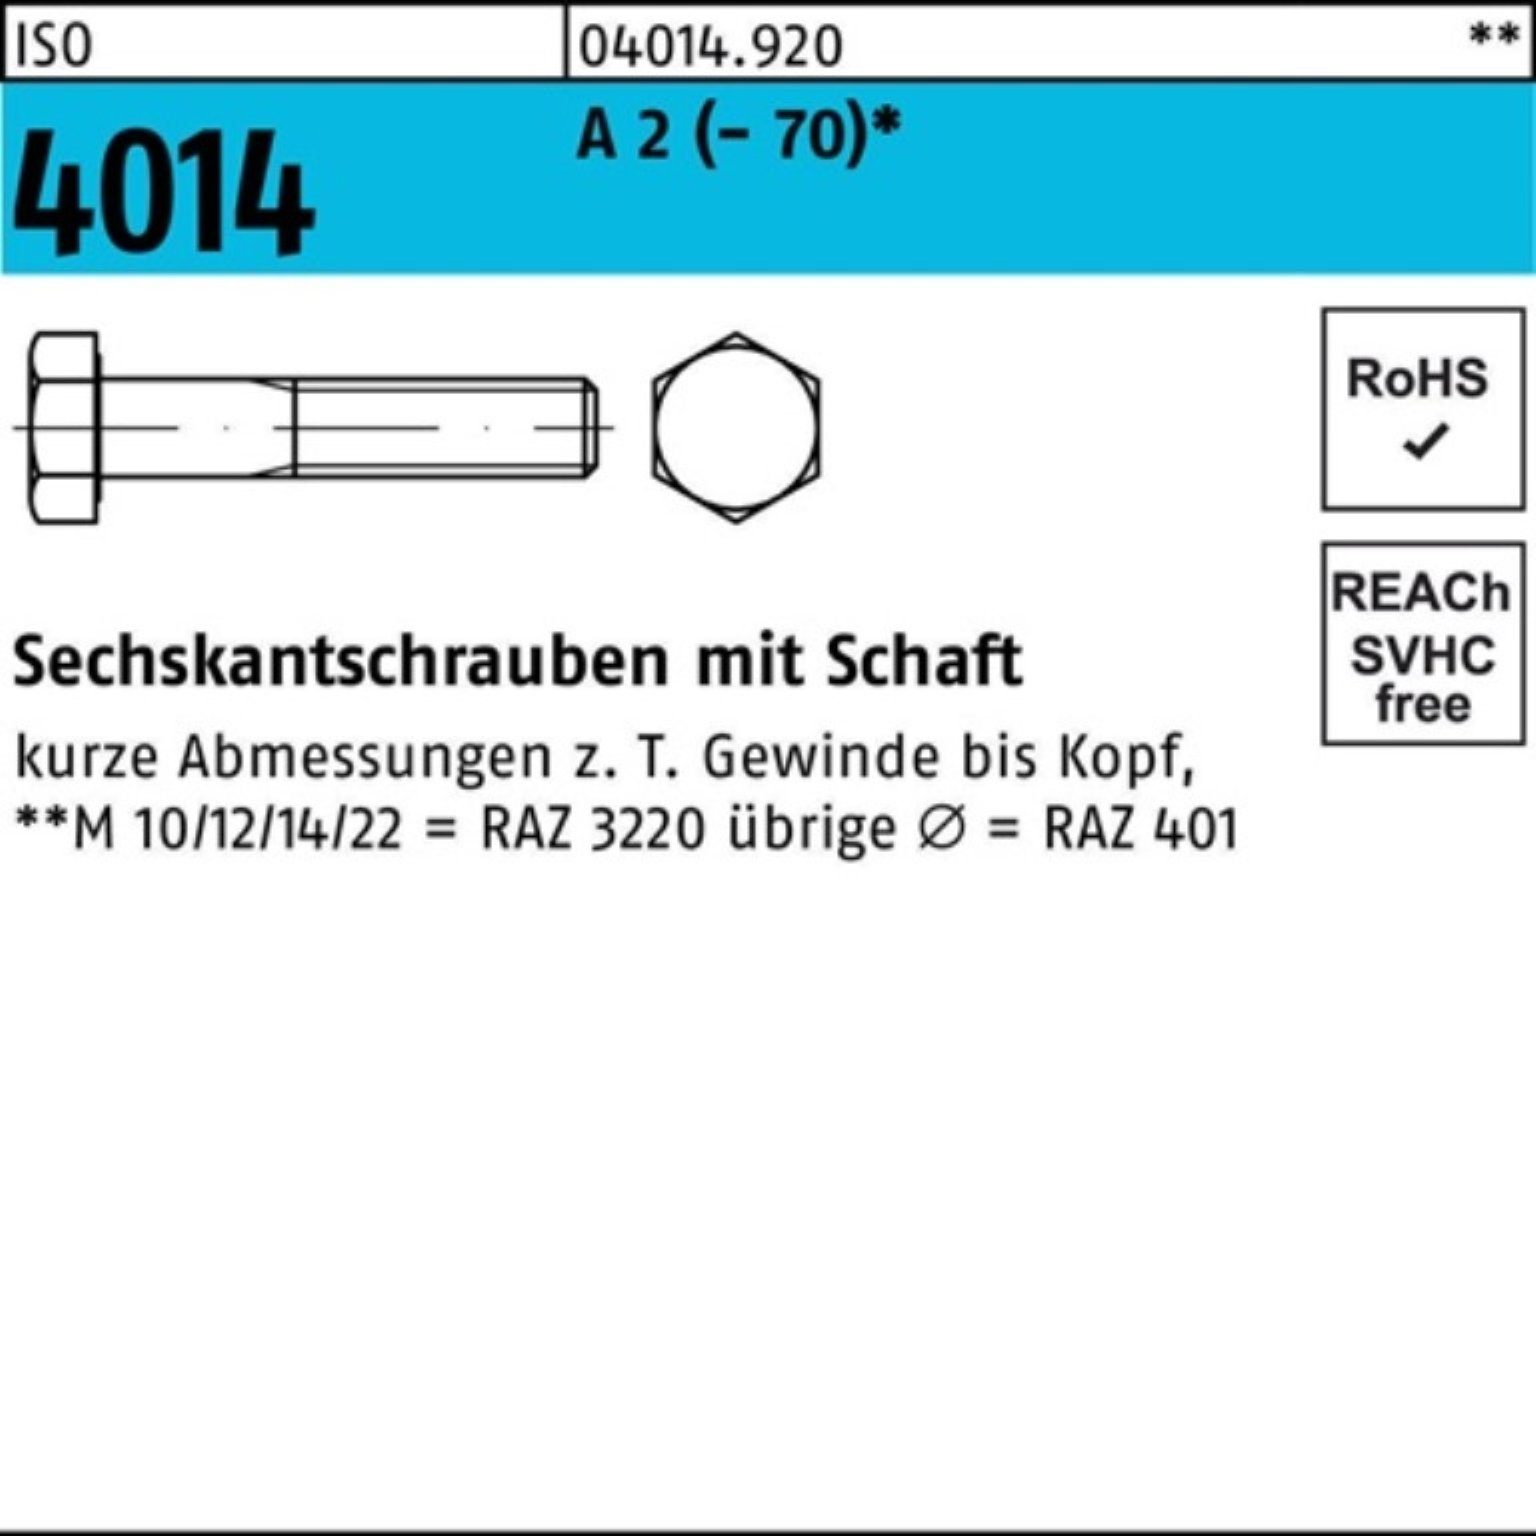 Bufab Sechskantschraube 100er Pack ISO Sechskantschraube 4014 (70) M20x St 2 1 A Schaft 230